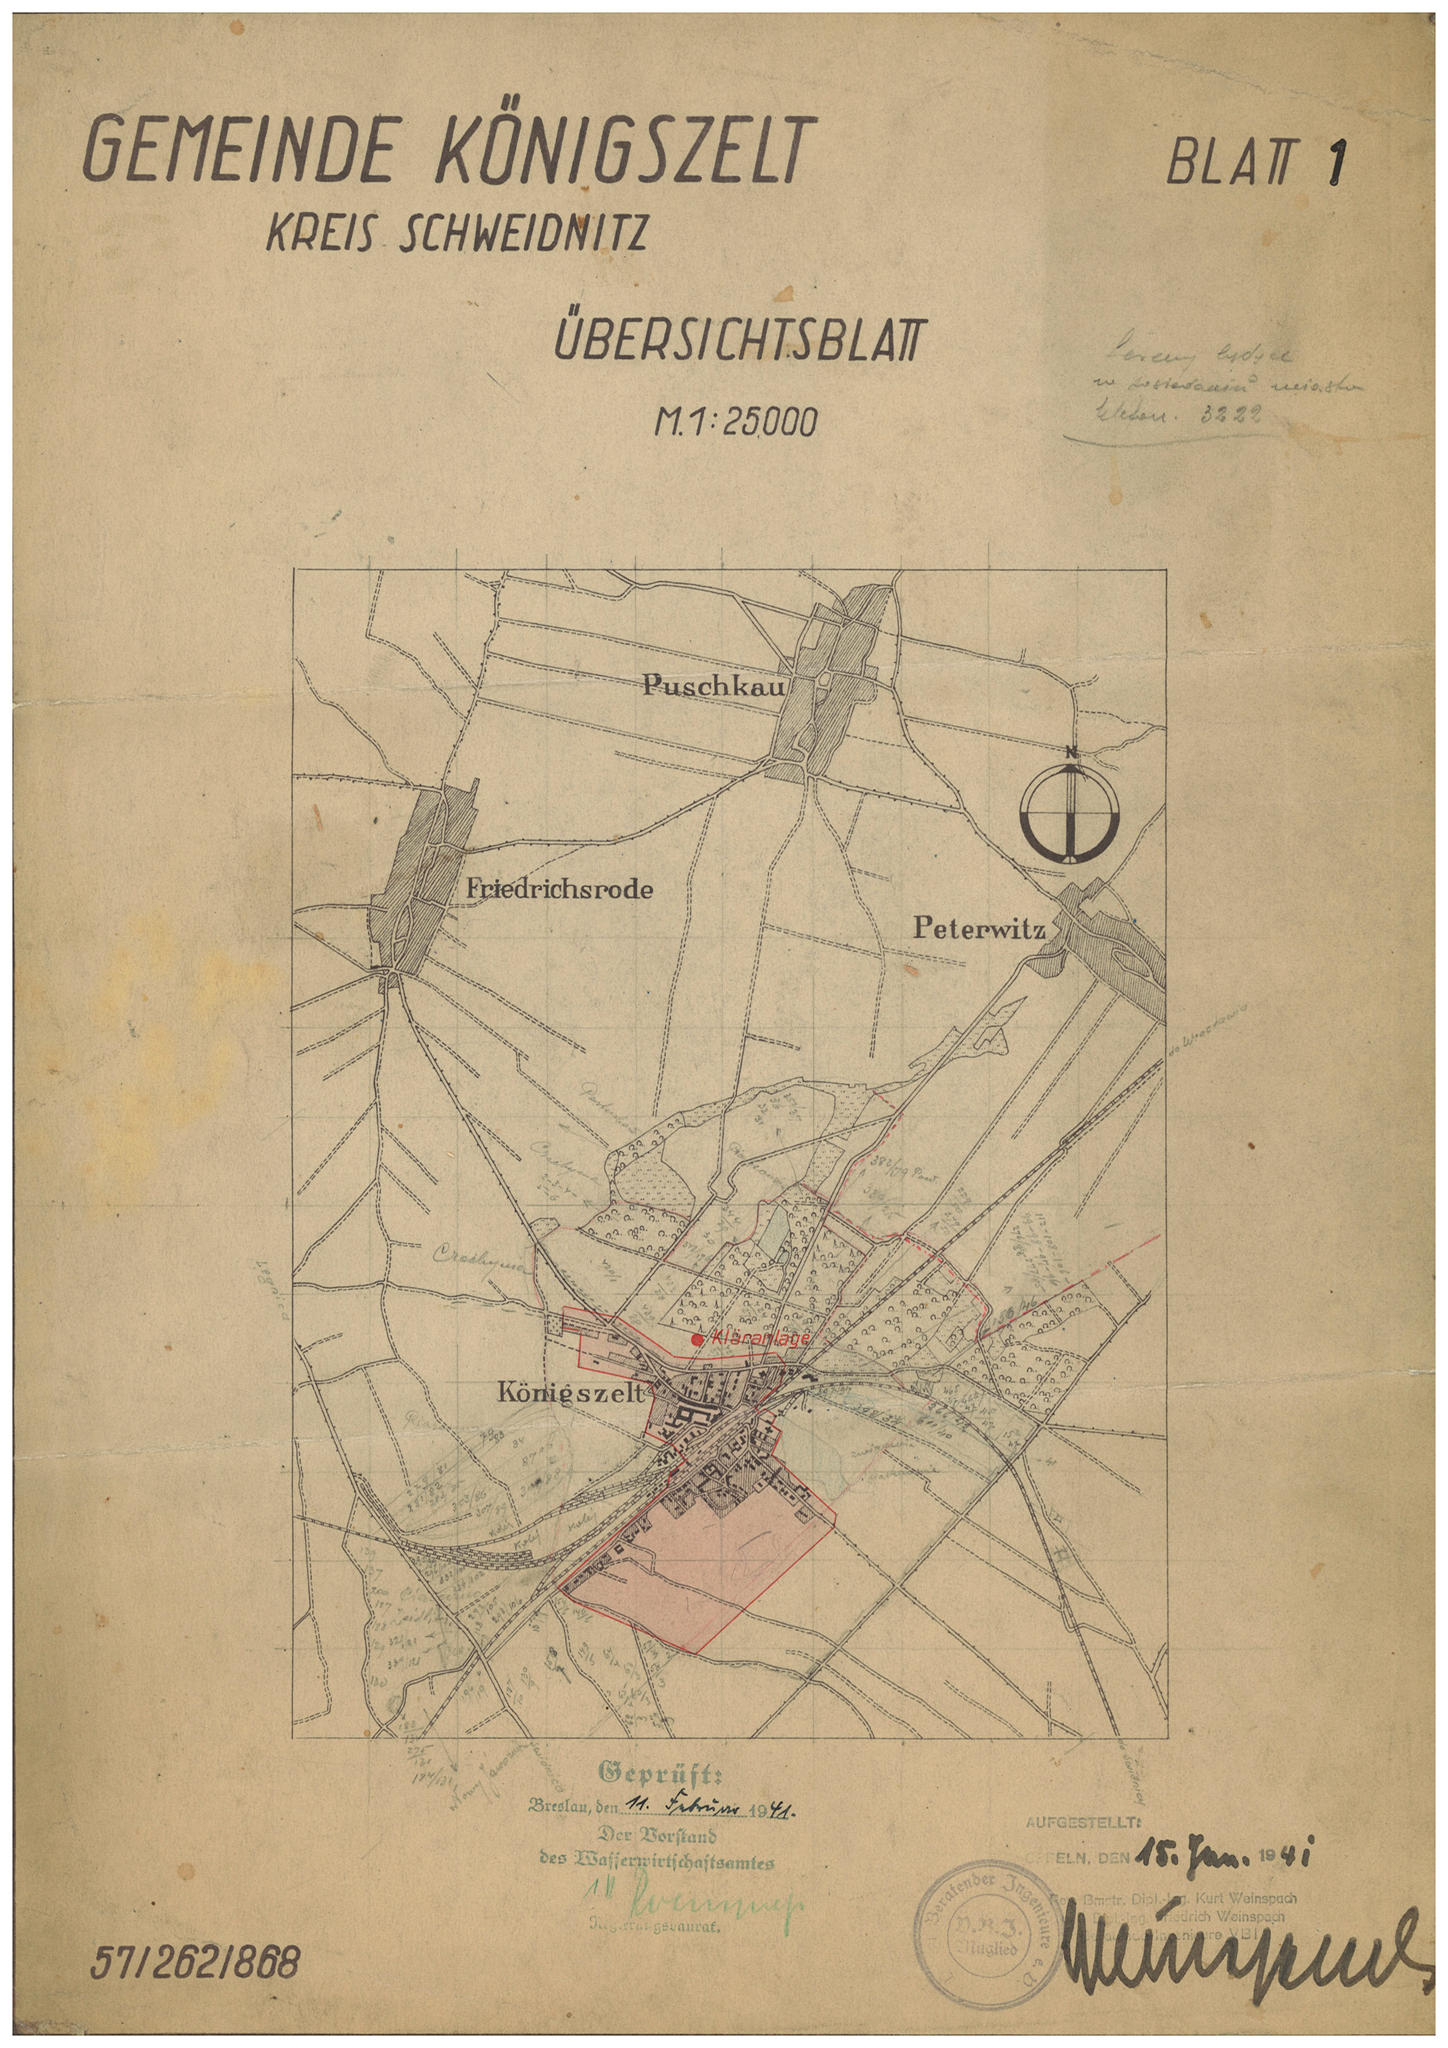 333.  Mapa gminy Königszelt z polskimi adnotacjami, 1941